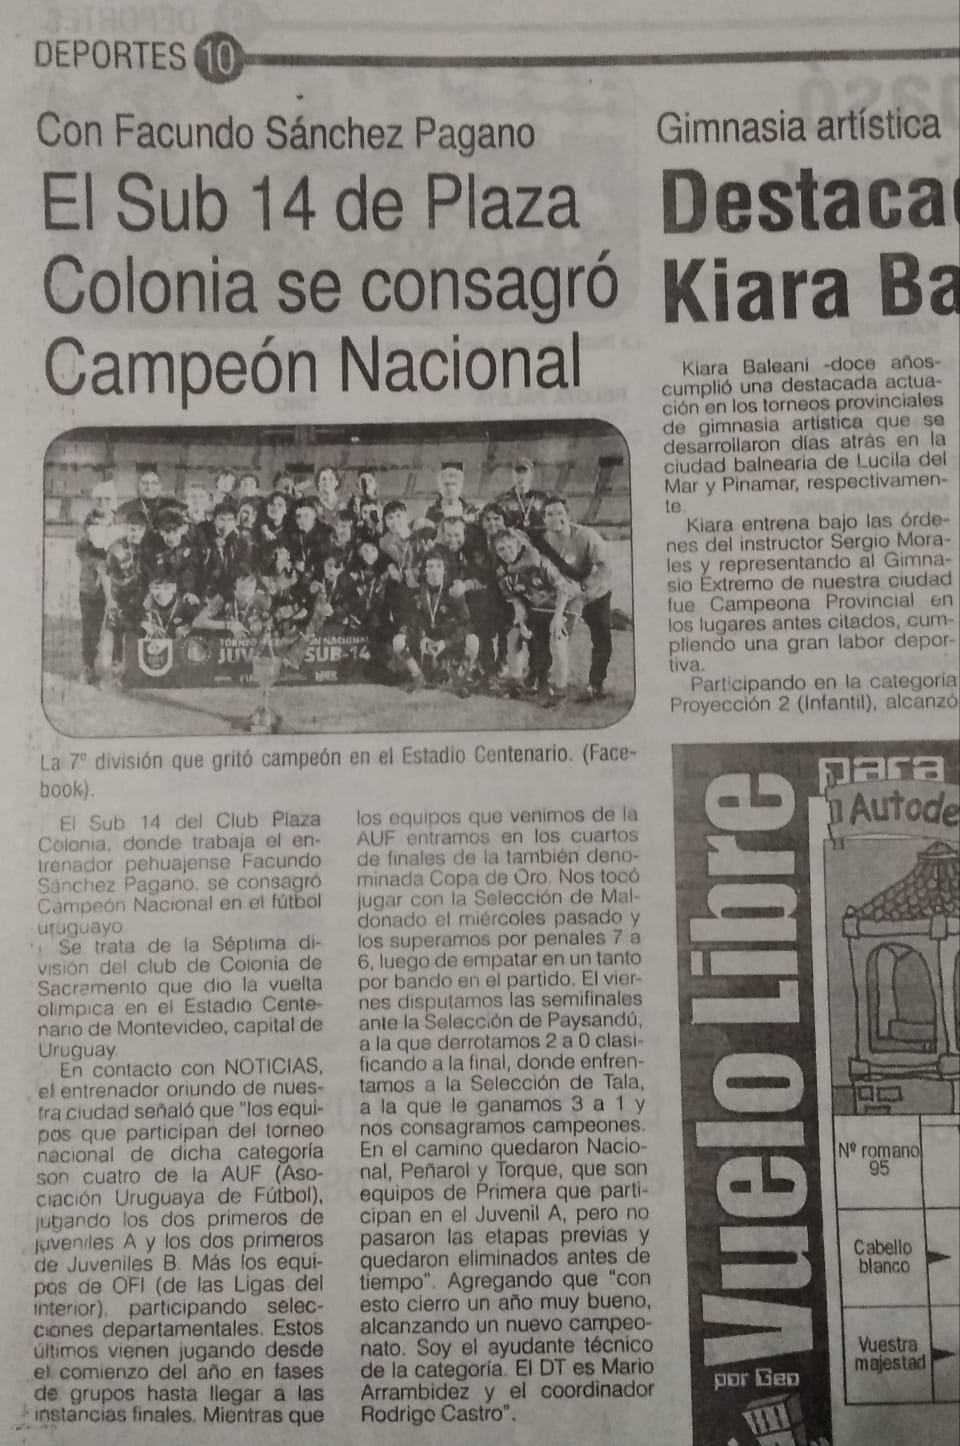 Campeones Nacionales 2019- Plaza Colonia